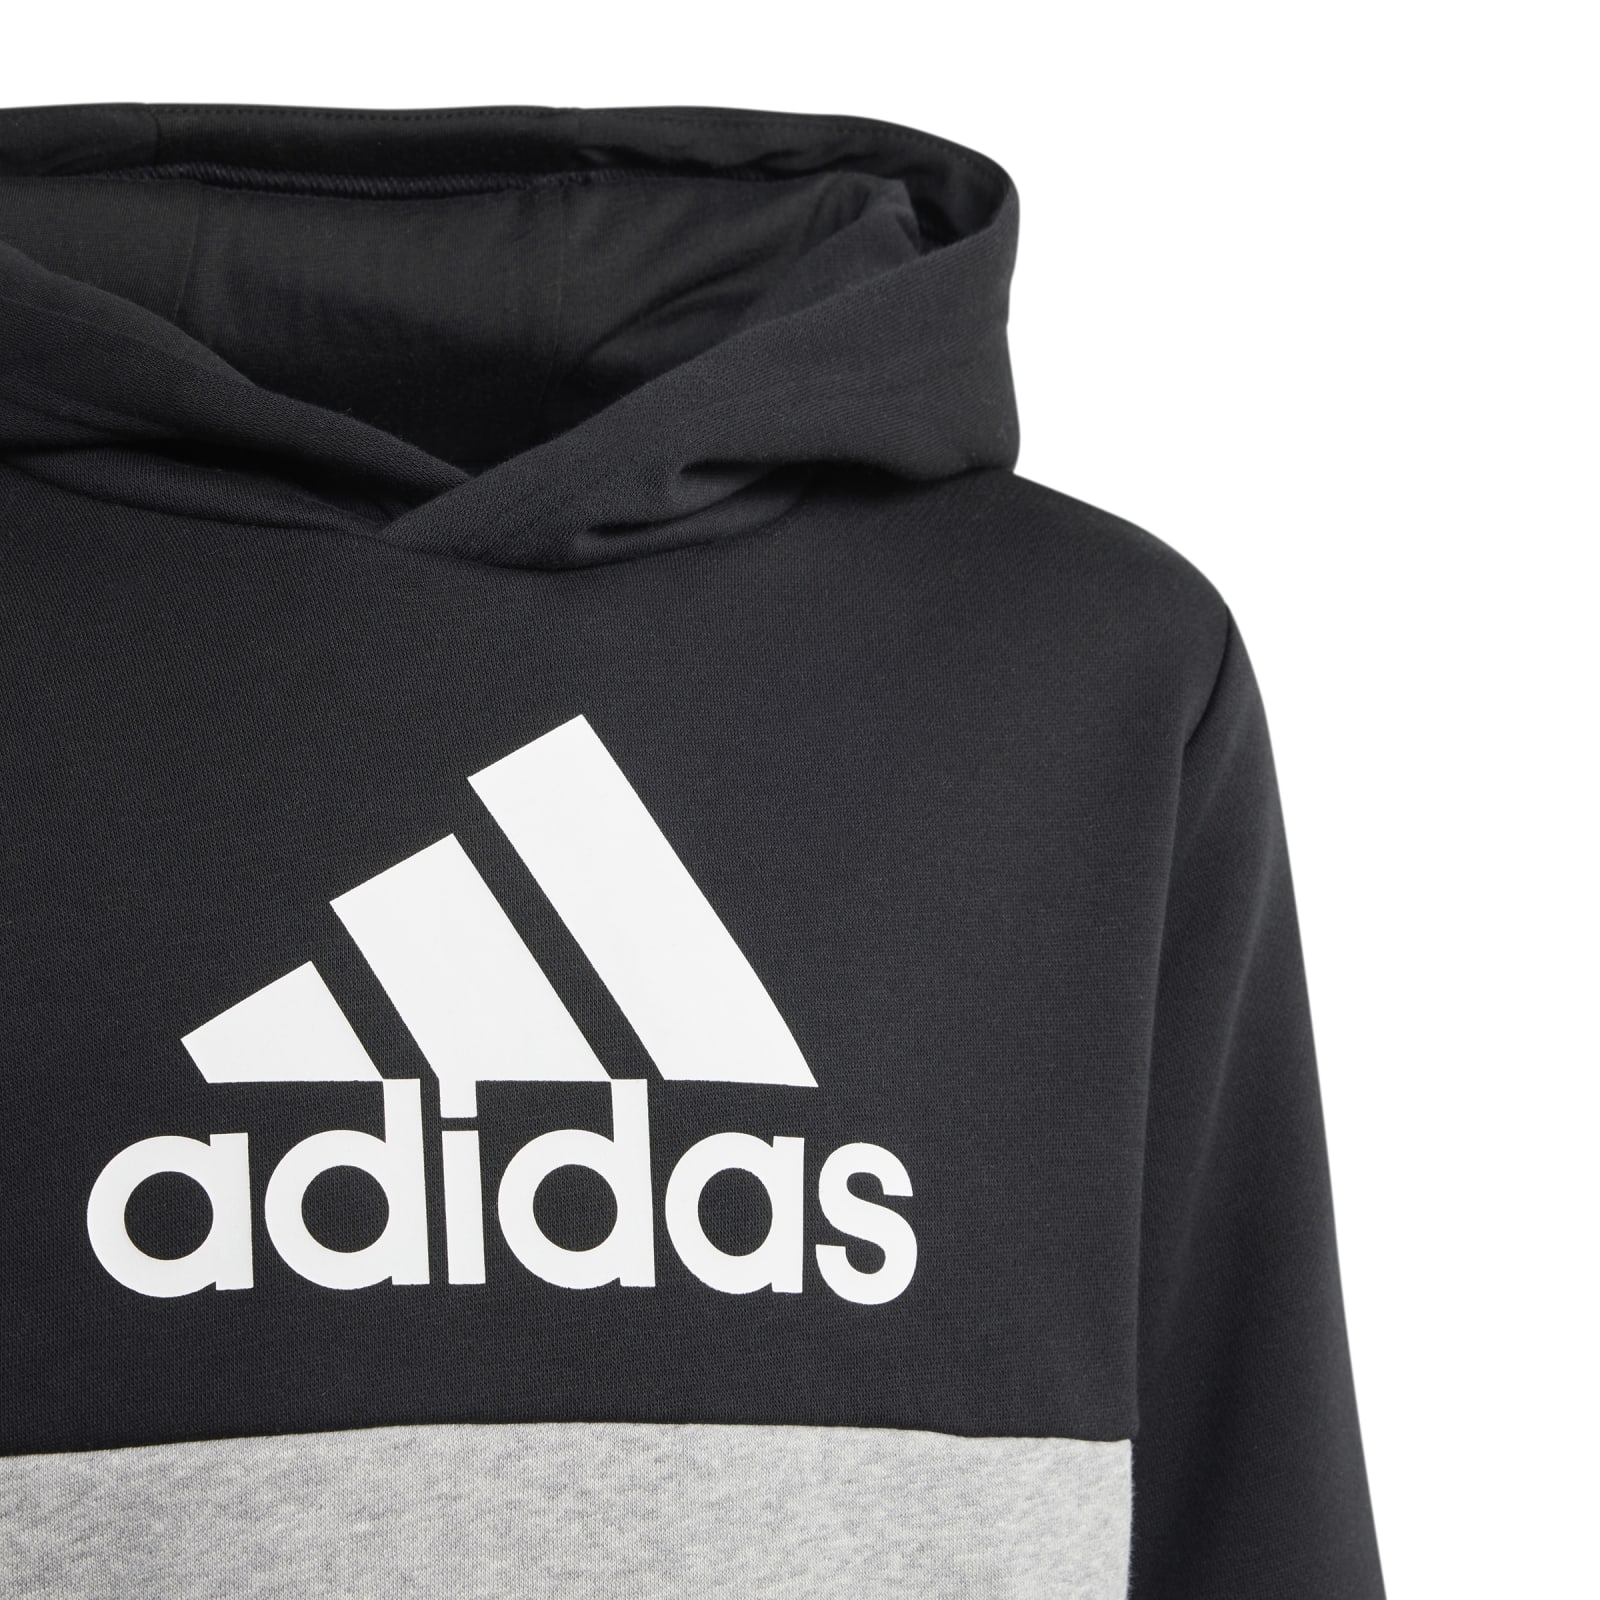 adidas online bestellen (Baumwollmix) schwarz/grau Fleece Jungen Trainingsanzug Colourblock